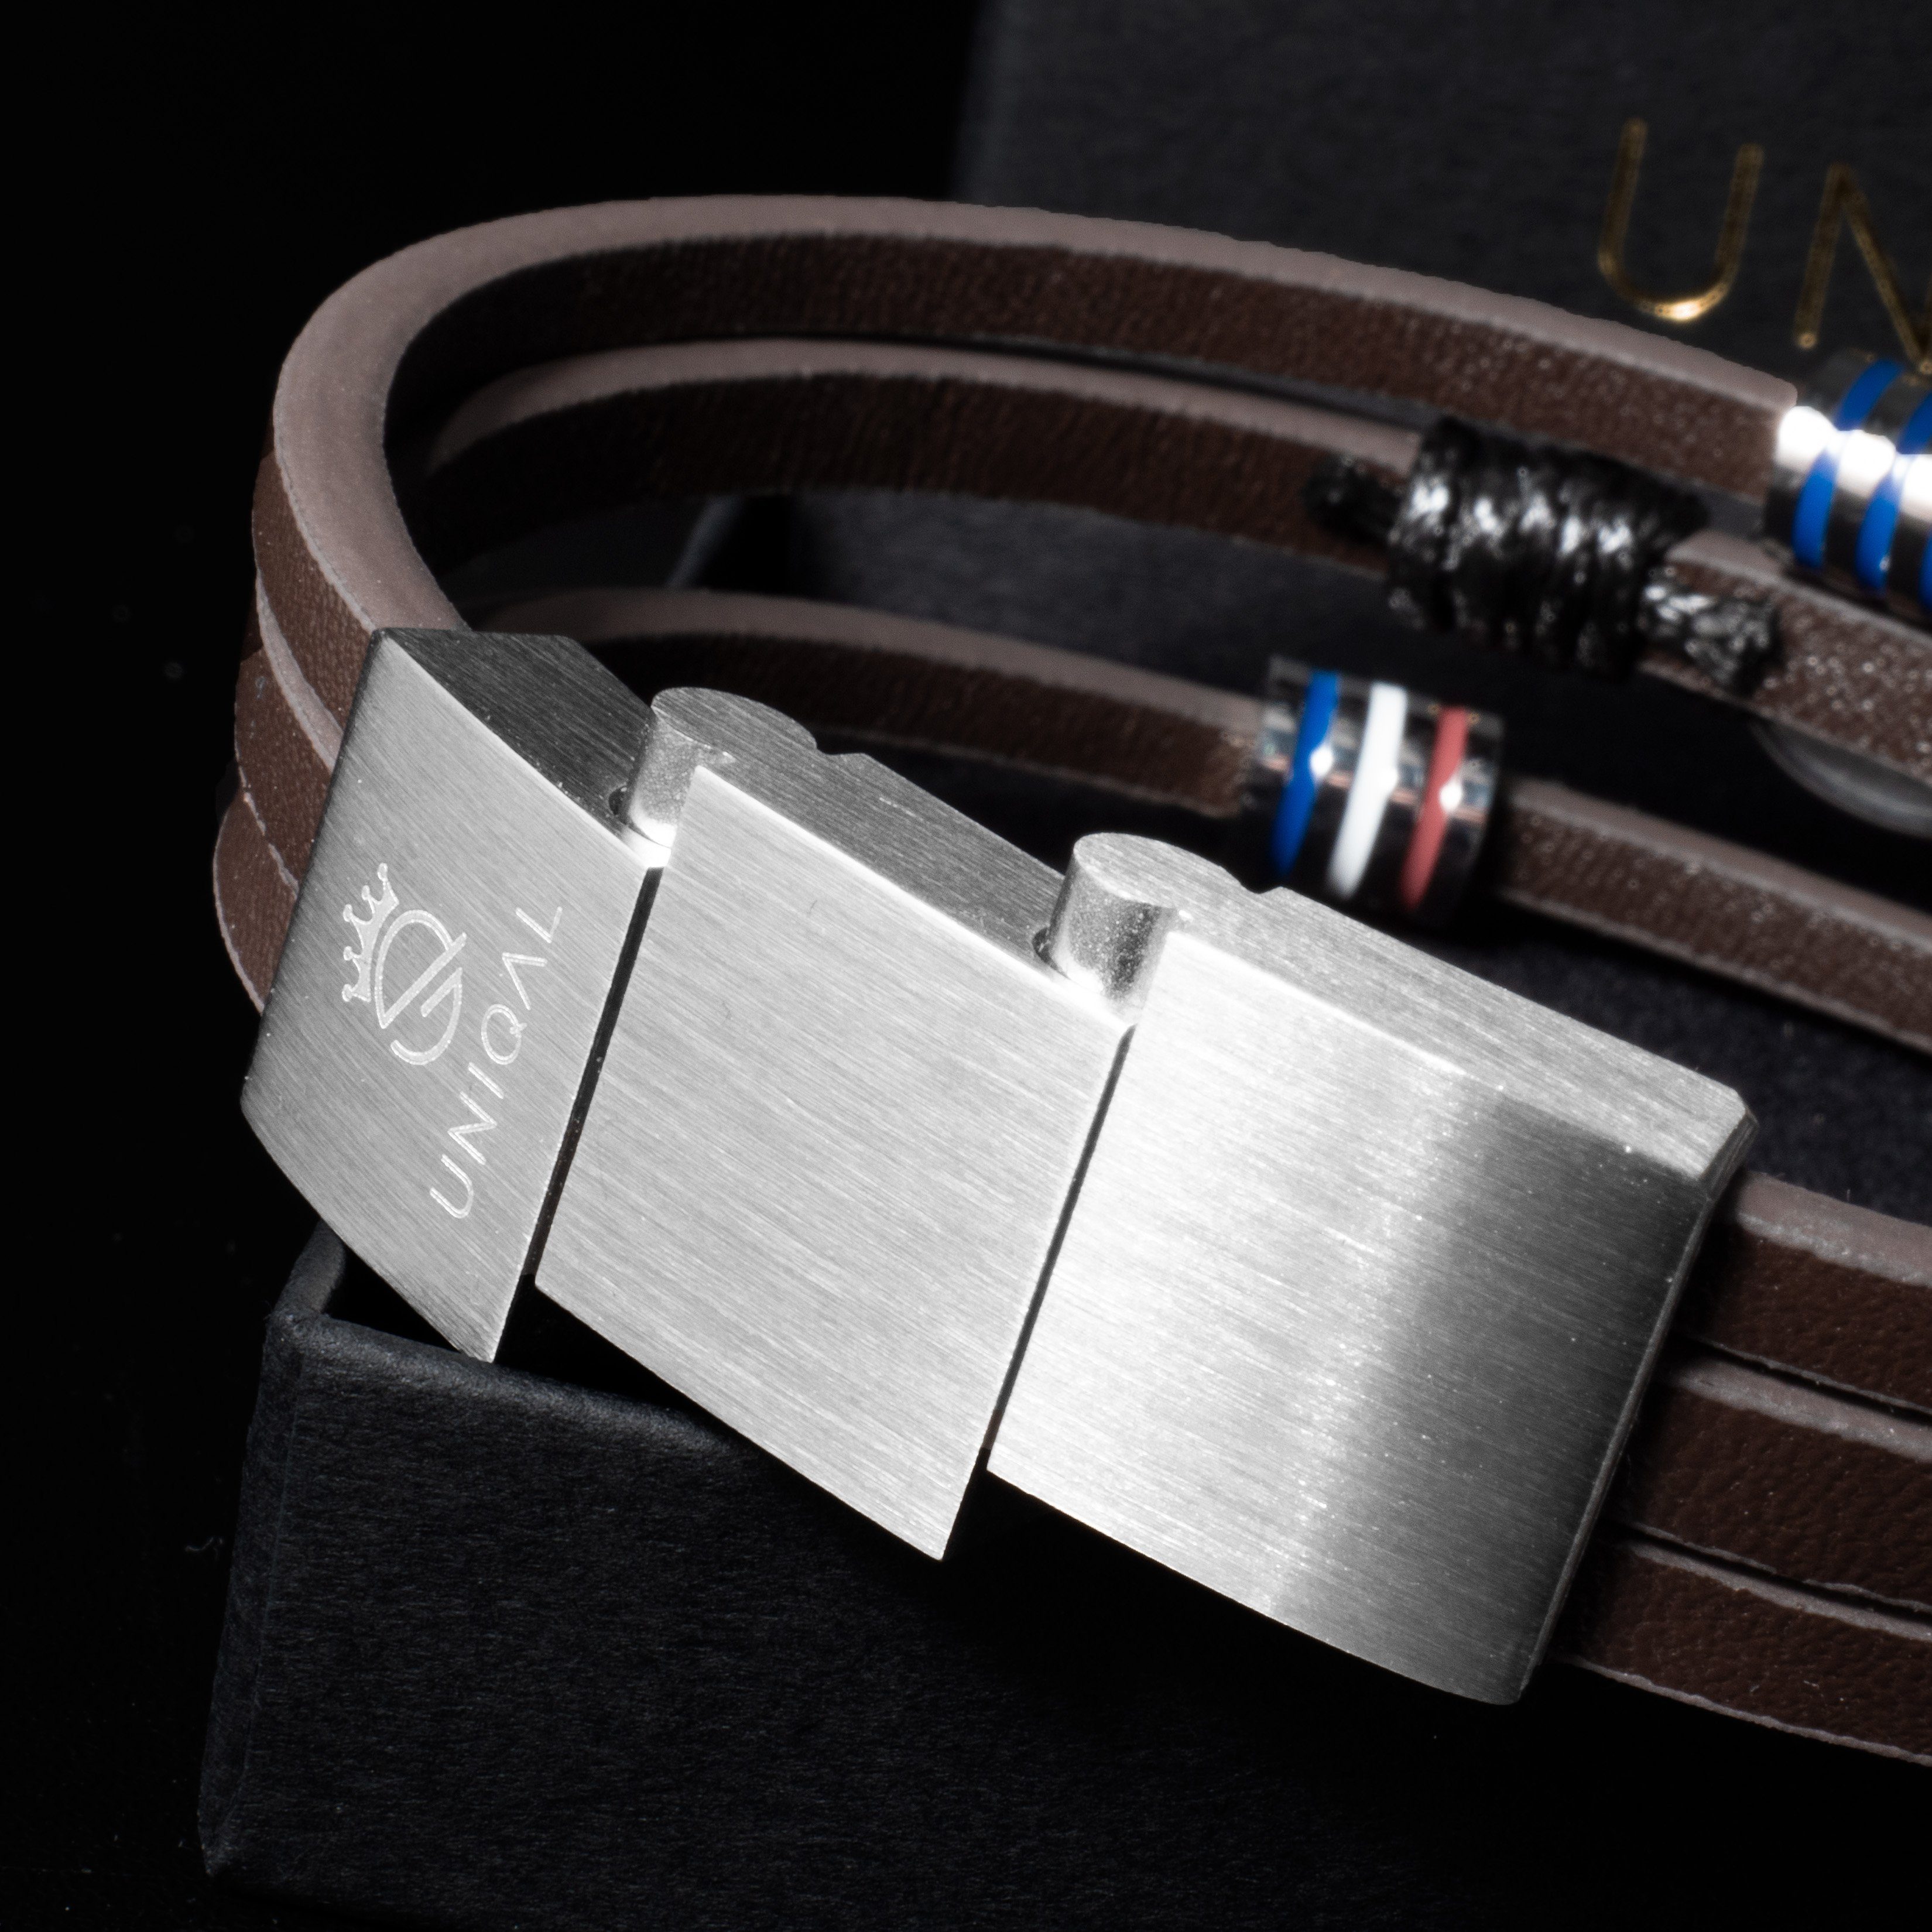 Leder (Unendlichkeitszeichen, Herren Lederarmband Designed "EIGHT in SILVER" Armband Leder, Edelsthal, UNIQAL.de Unendlichkeit handgefertigt), Germany